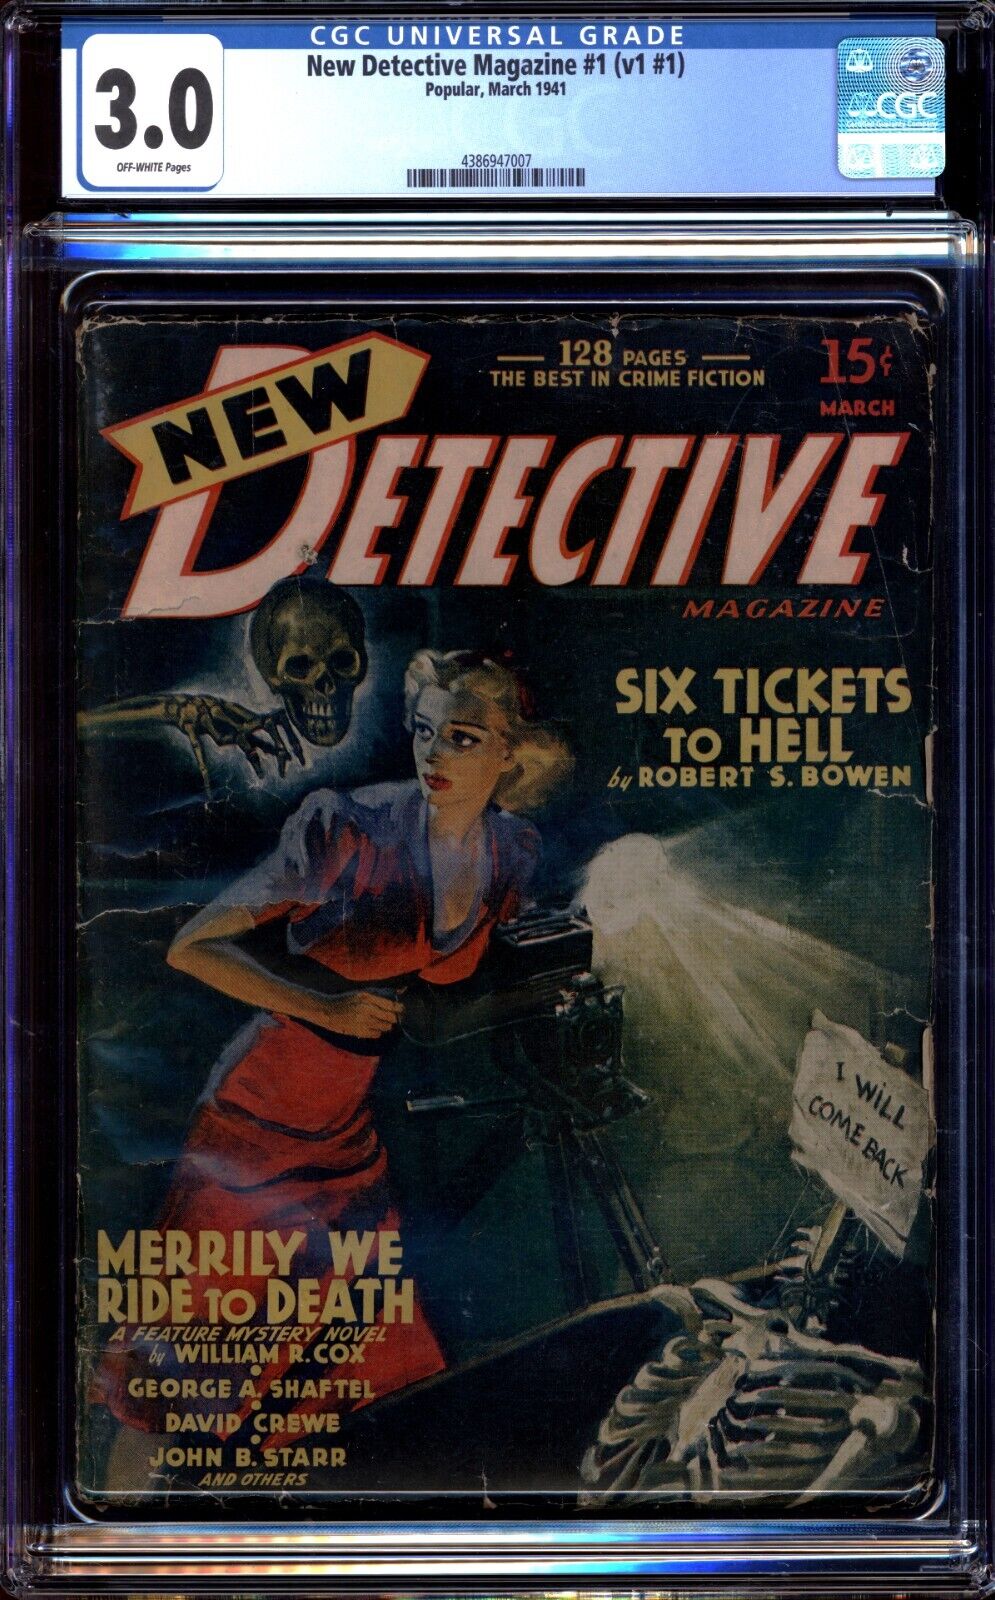 New Detective Pulp 1 (V #1) CGC 3.0 Classic Belarski Skull cover 1941 1st issue